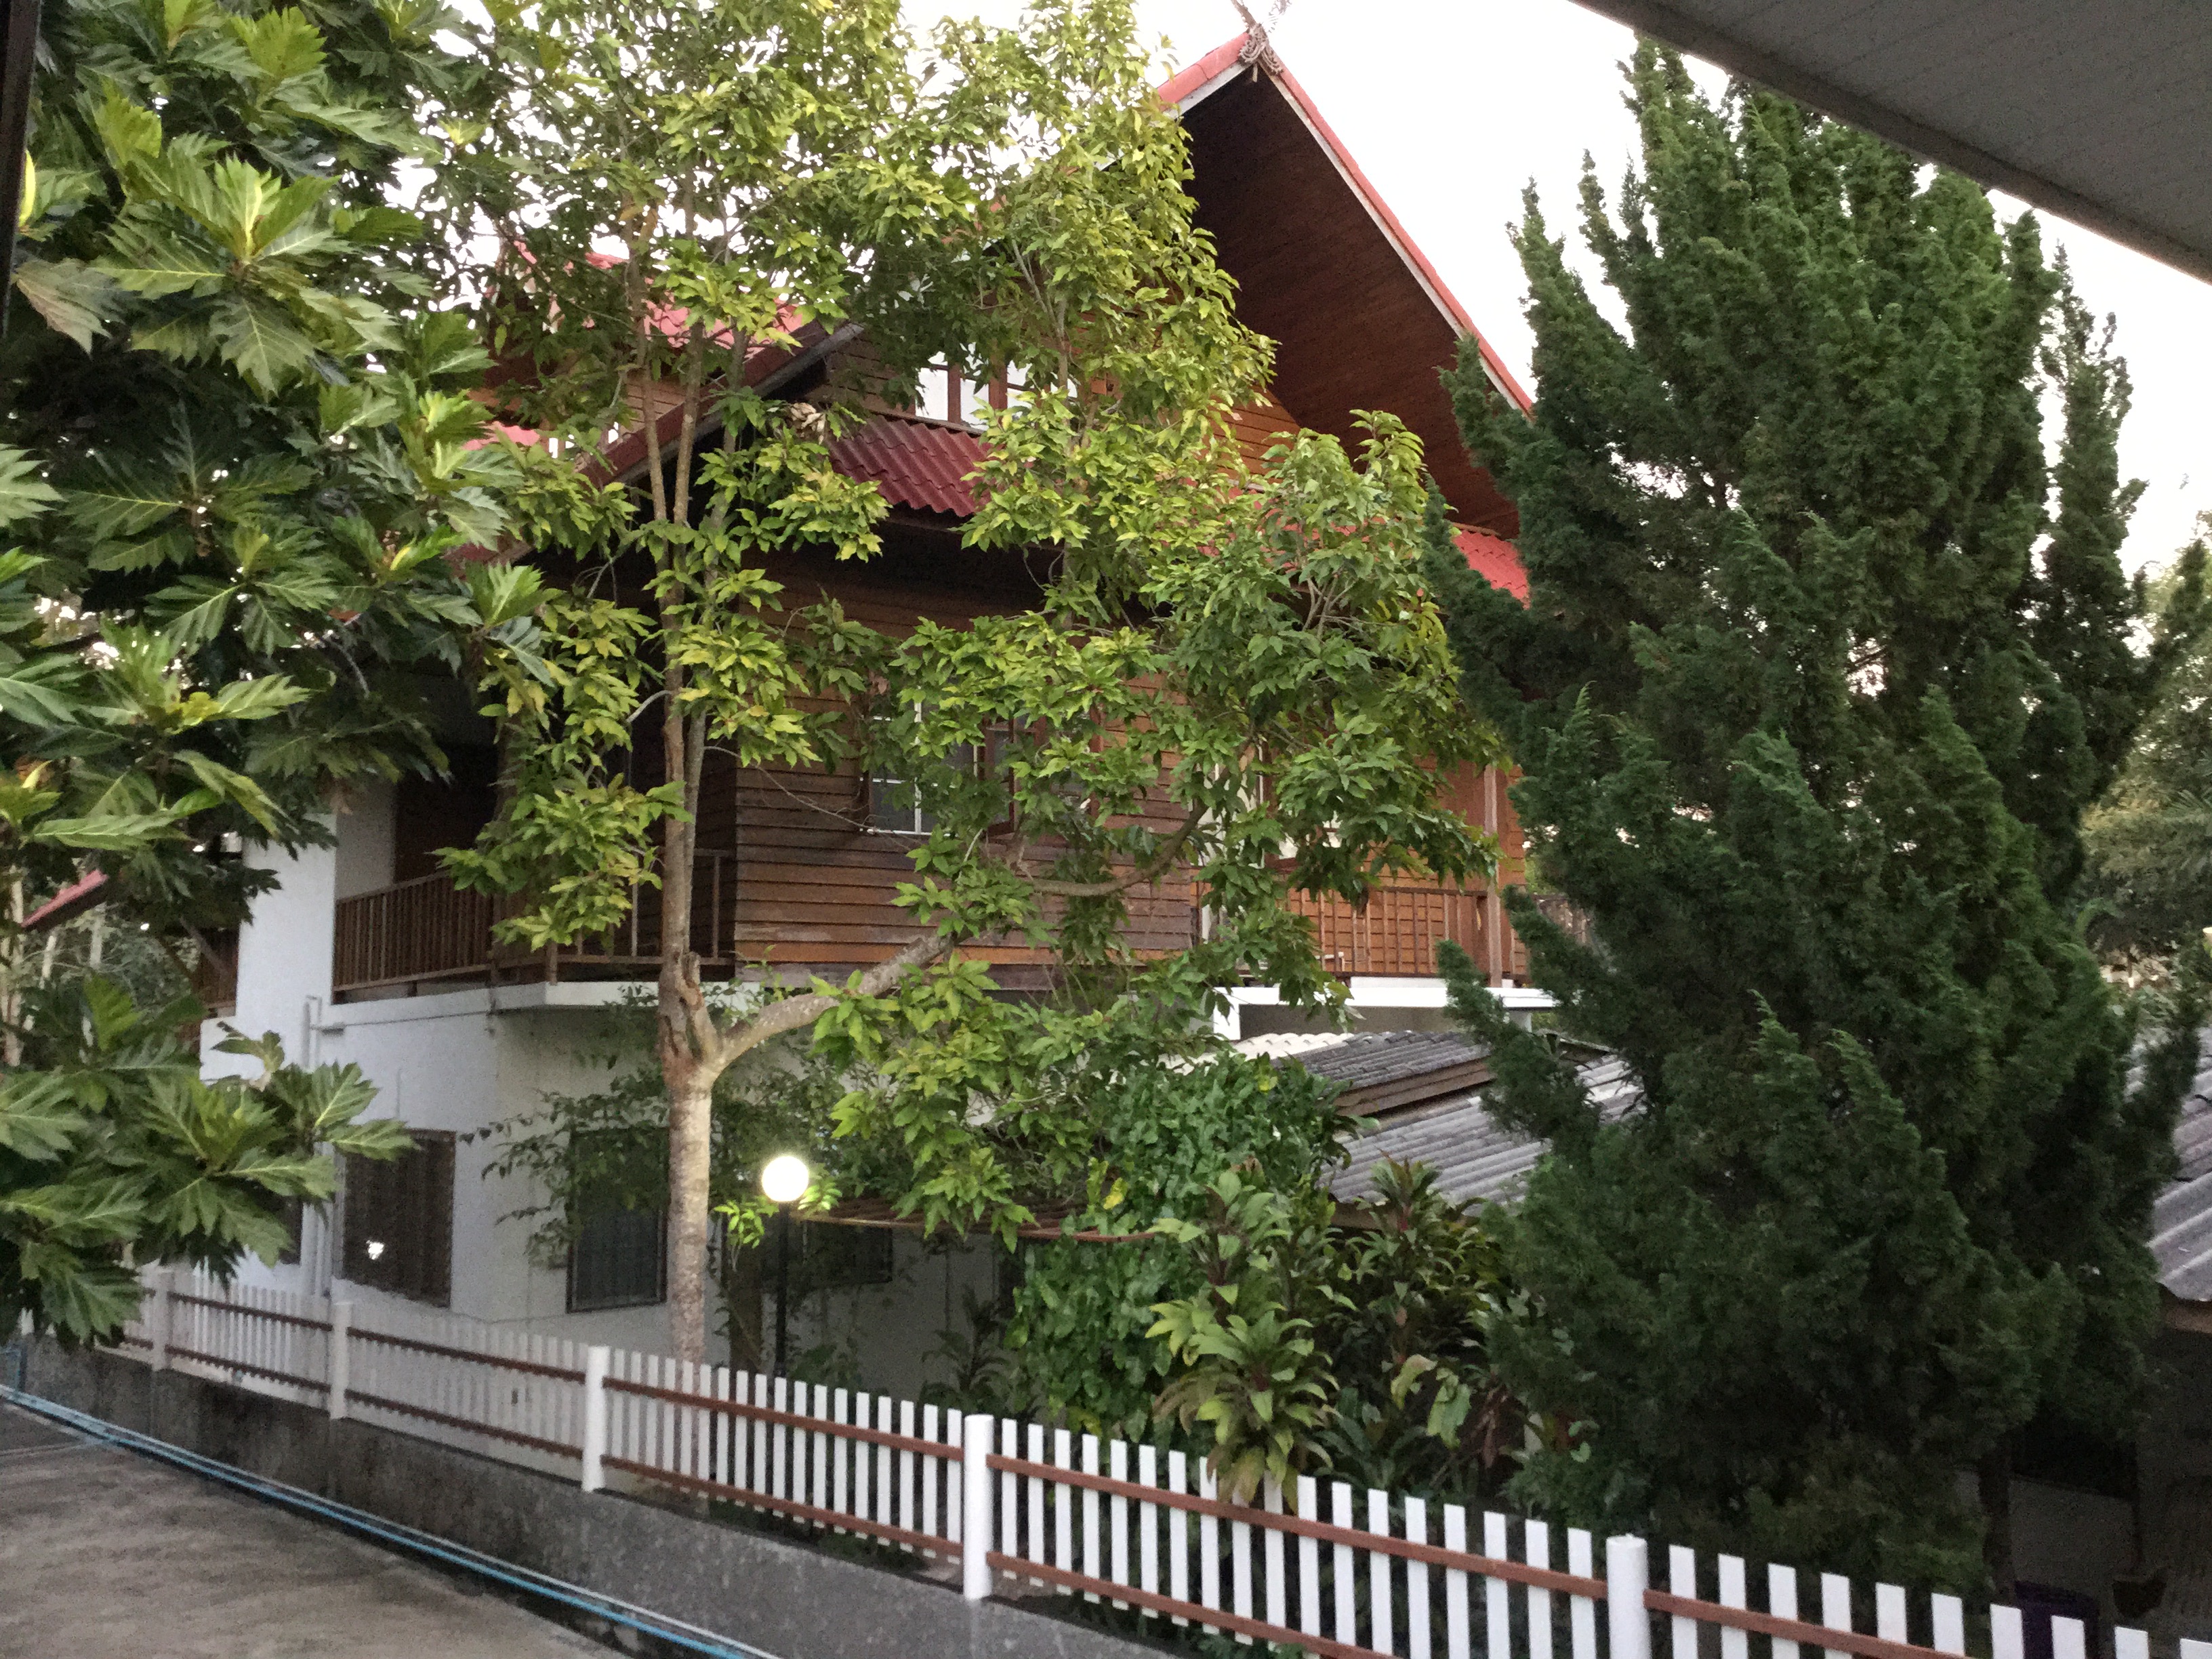 Nơi từng là trụ sở của Hiệp hội nghiên cứu và hỗ trợ Giáo pháp tại Chiangmai